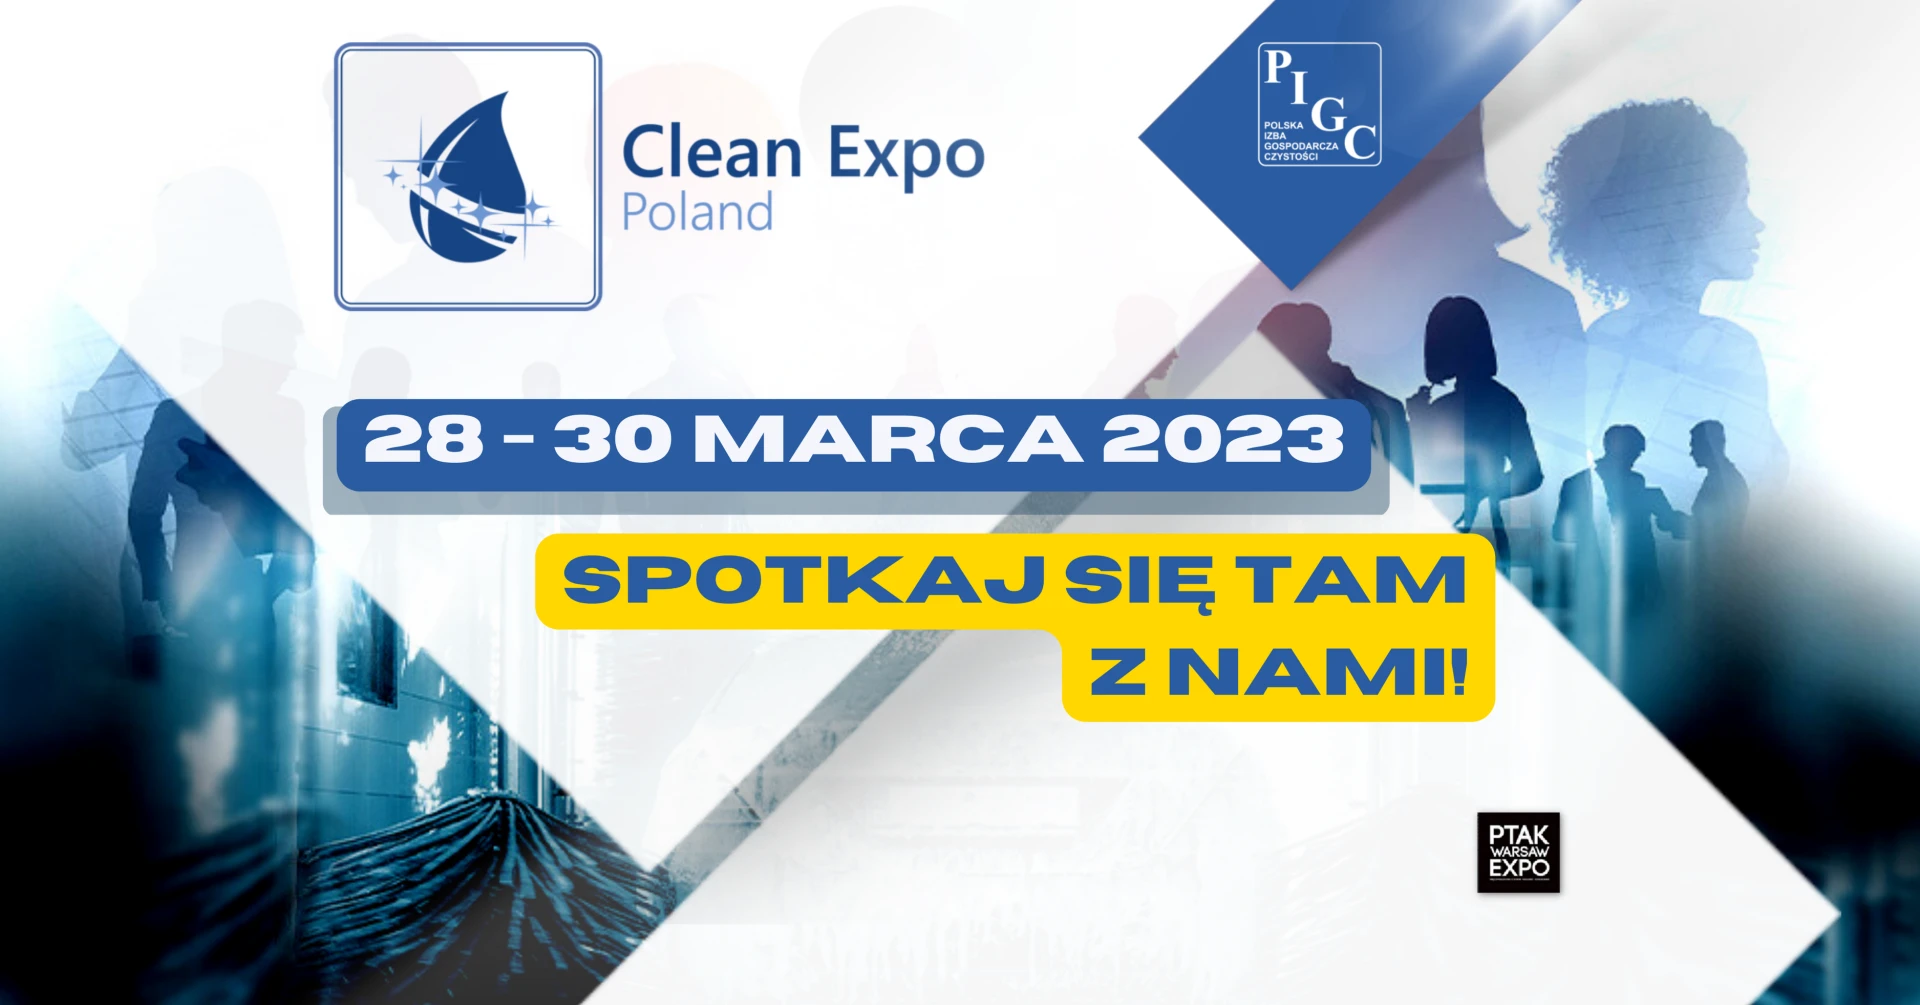 Odwiedź nas na targach Clean Expo Poland 2023